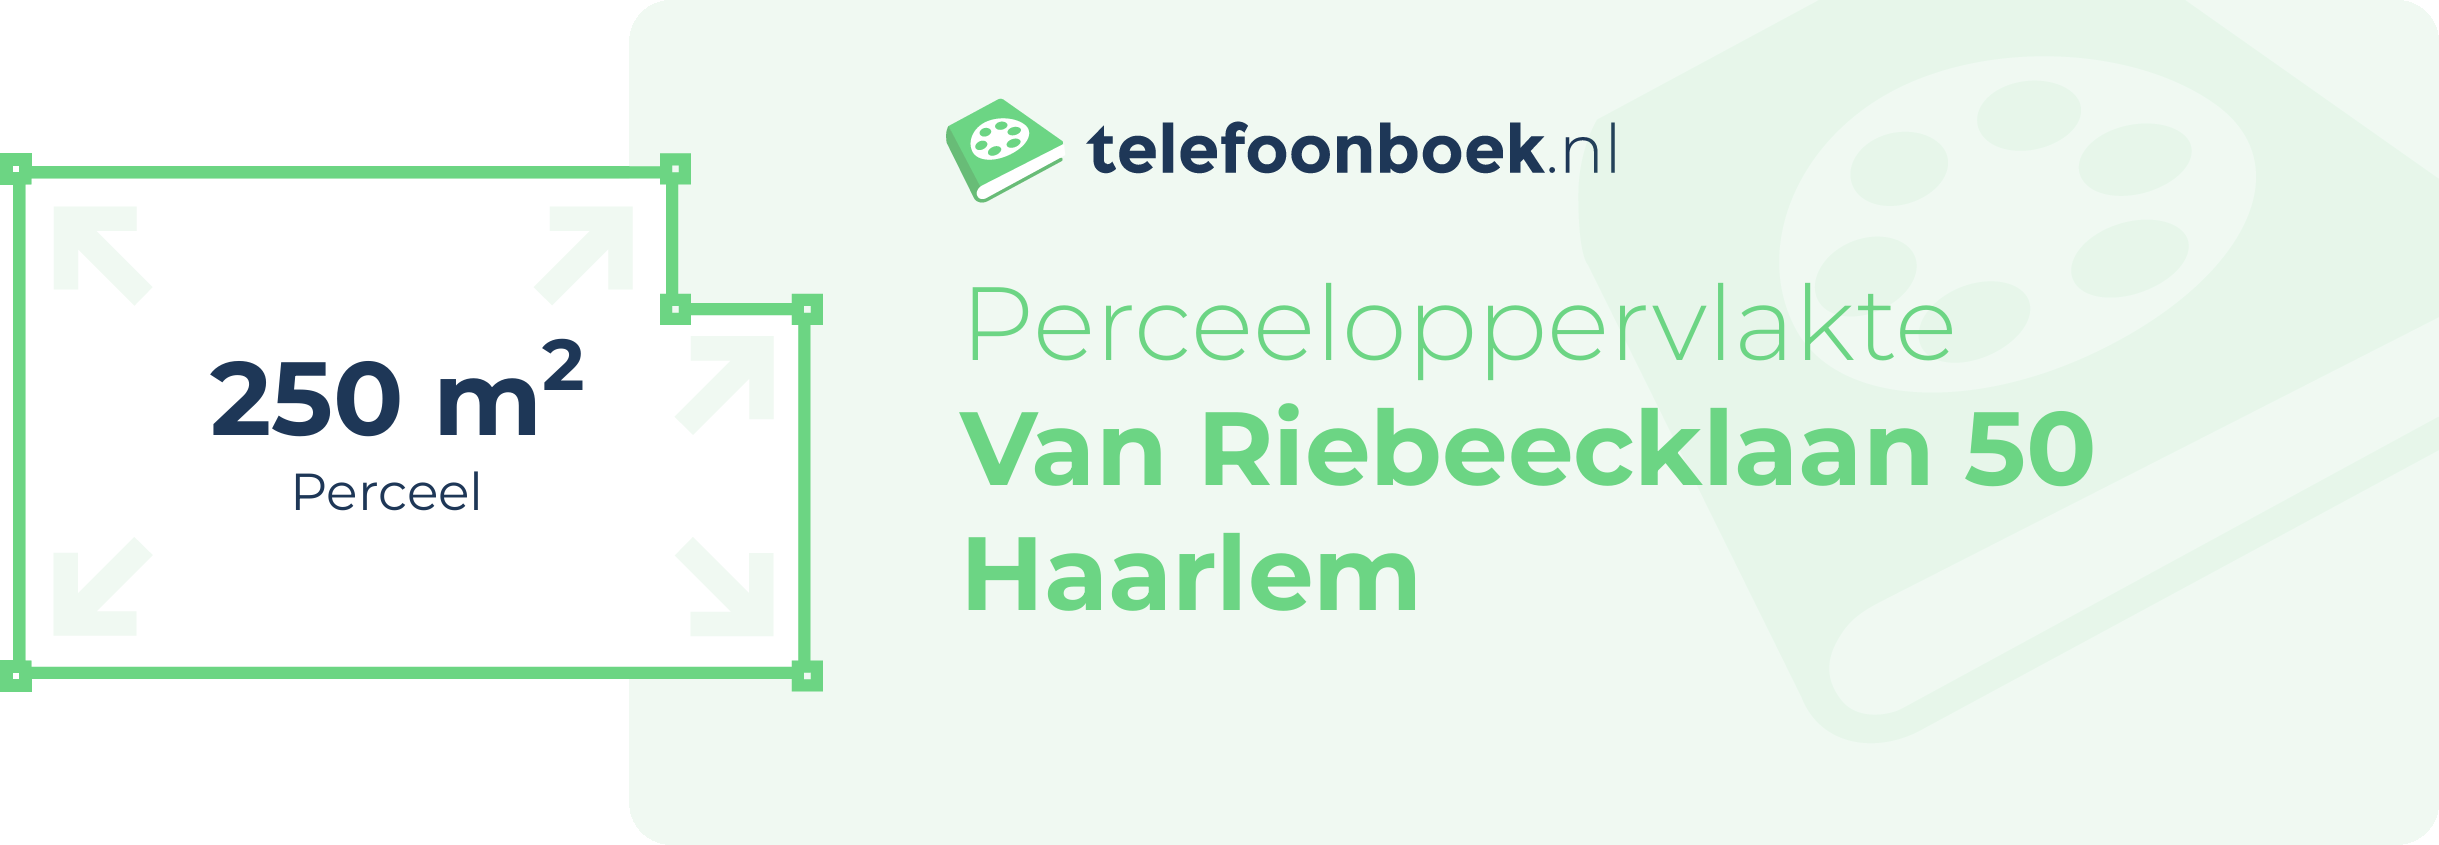 Perceeloppervlakte Van Riebeecklaan 50 Haarlem